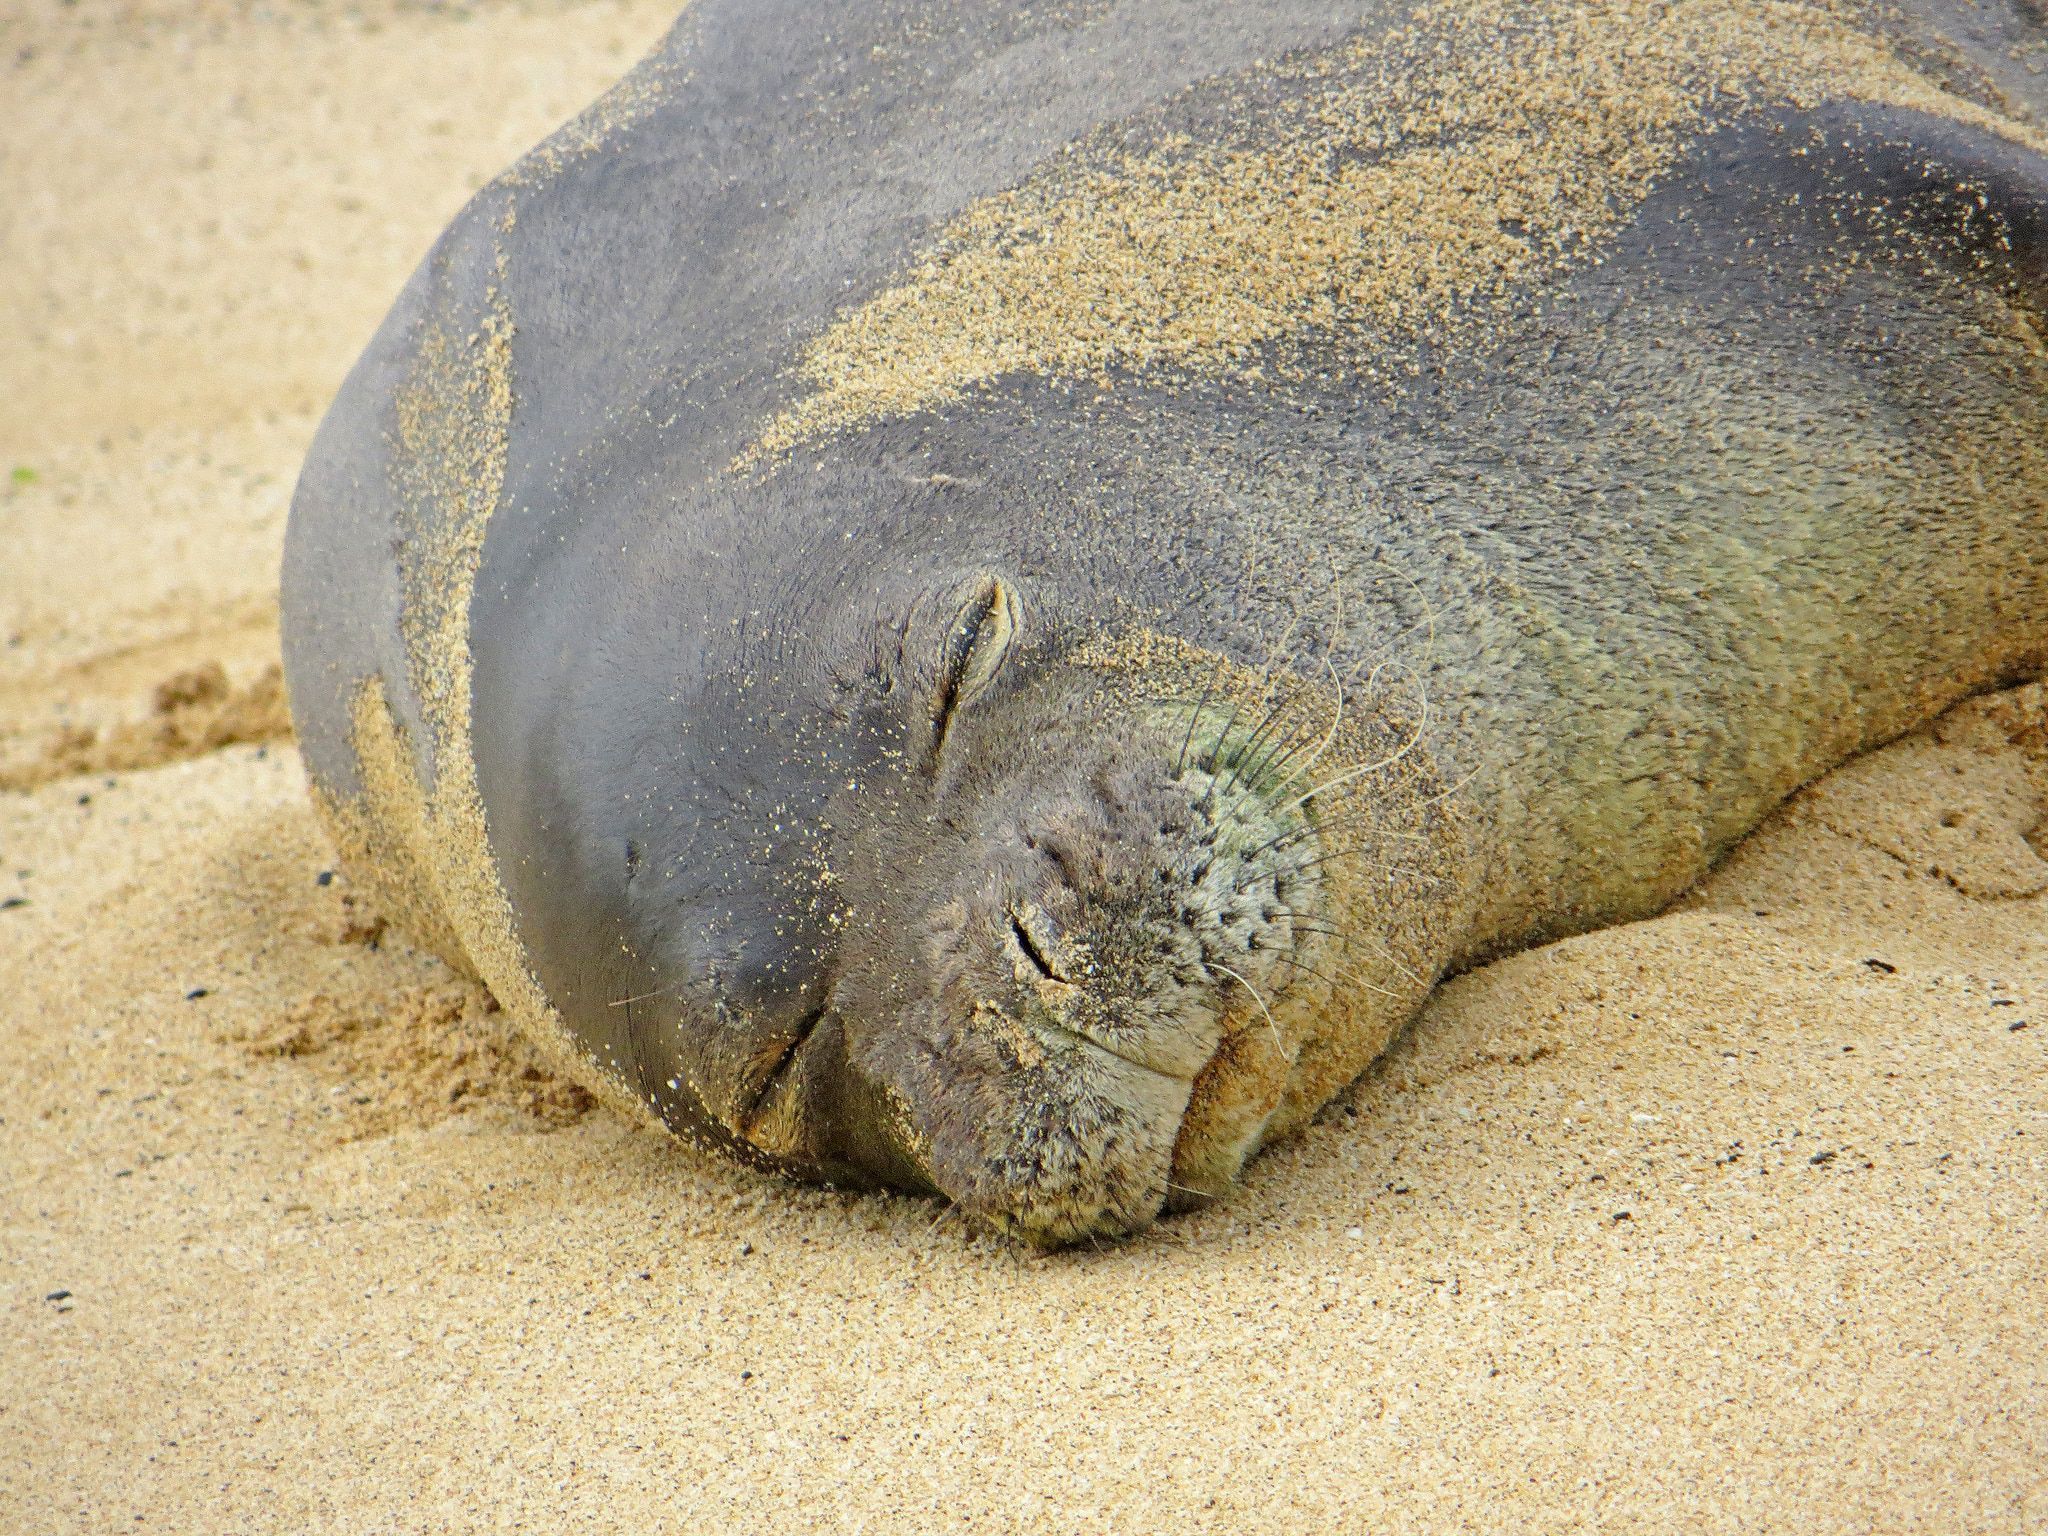 Do not disturb' the monk seals, warn Hawaiian signs. Alabama